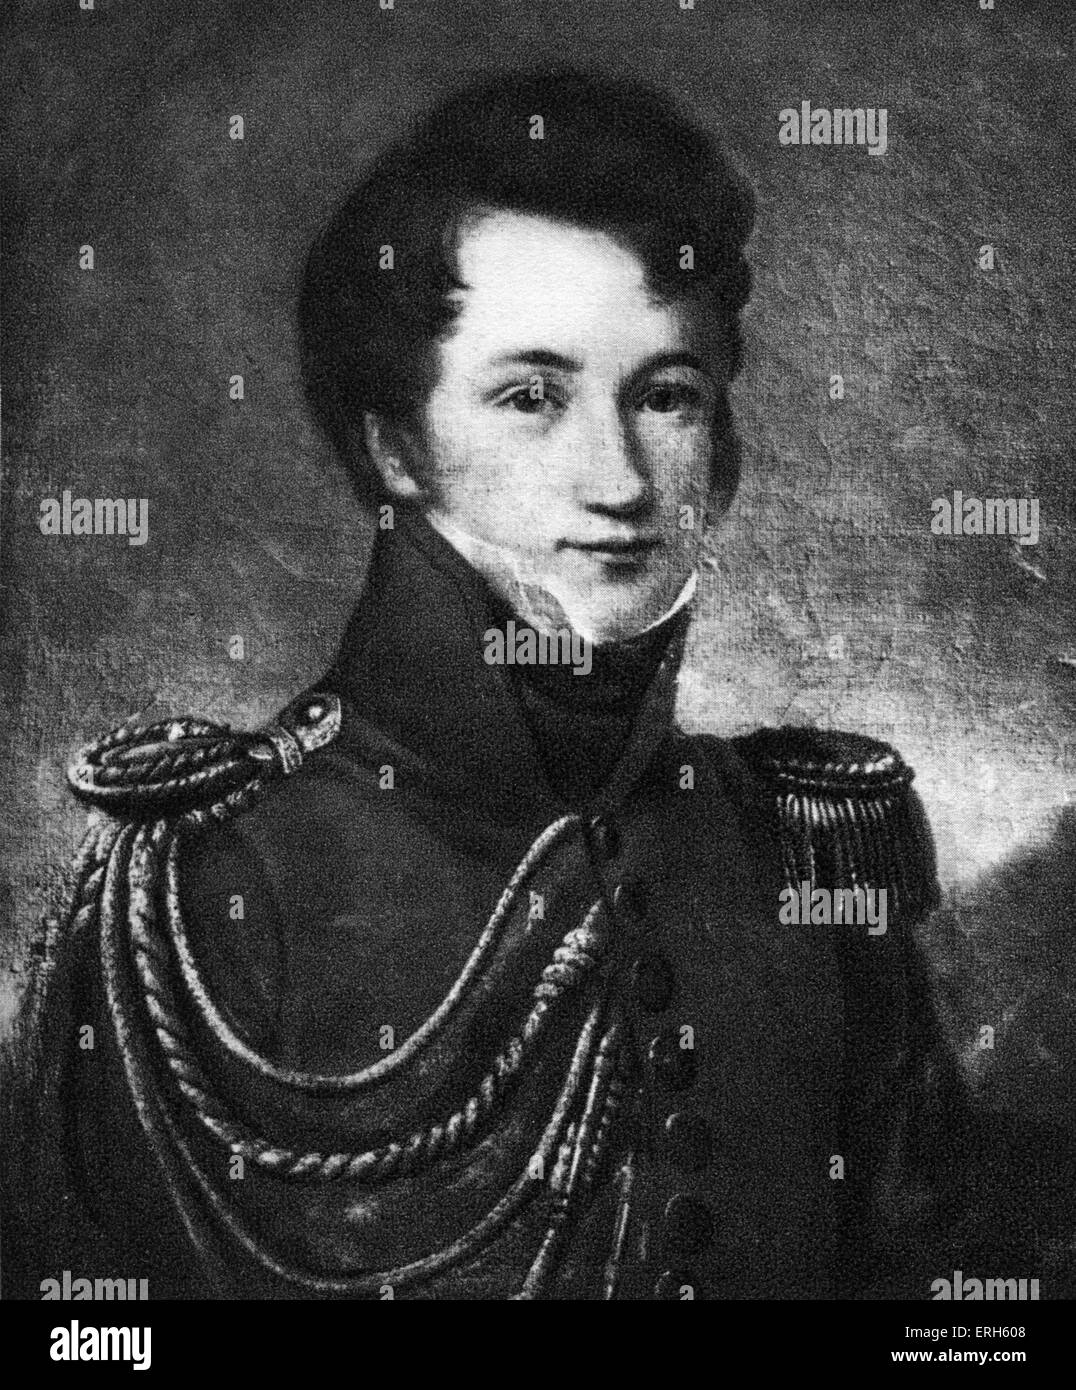 Alfred de Vigny - retrato de artista desconocido. El poeta francés, dramaturgo y novelista, 27 de marzo de 1797 - 17 de septiembre de 1863. Foto de stock